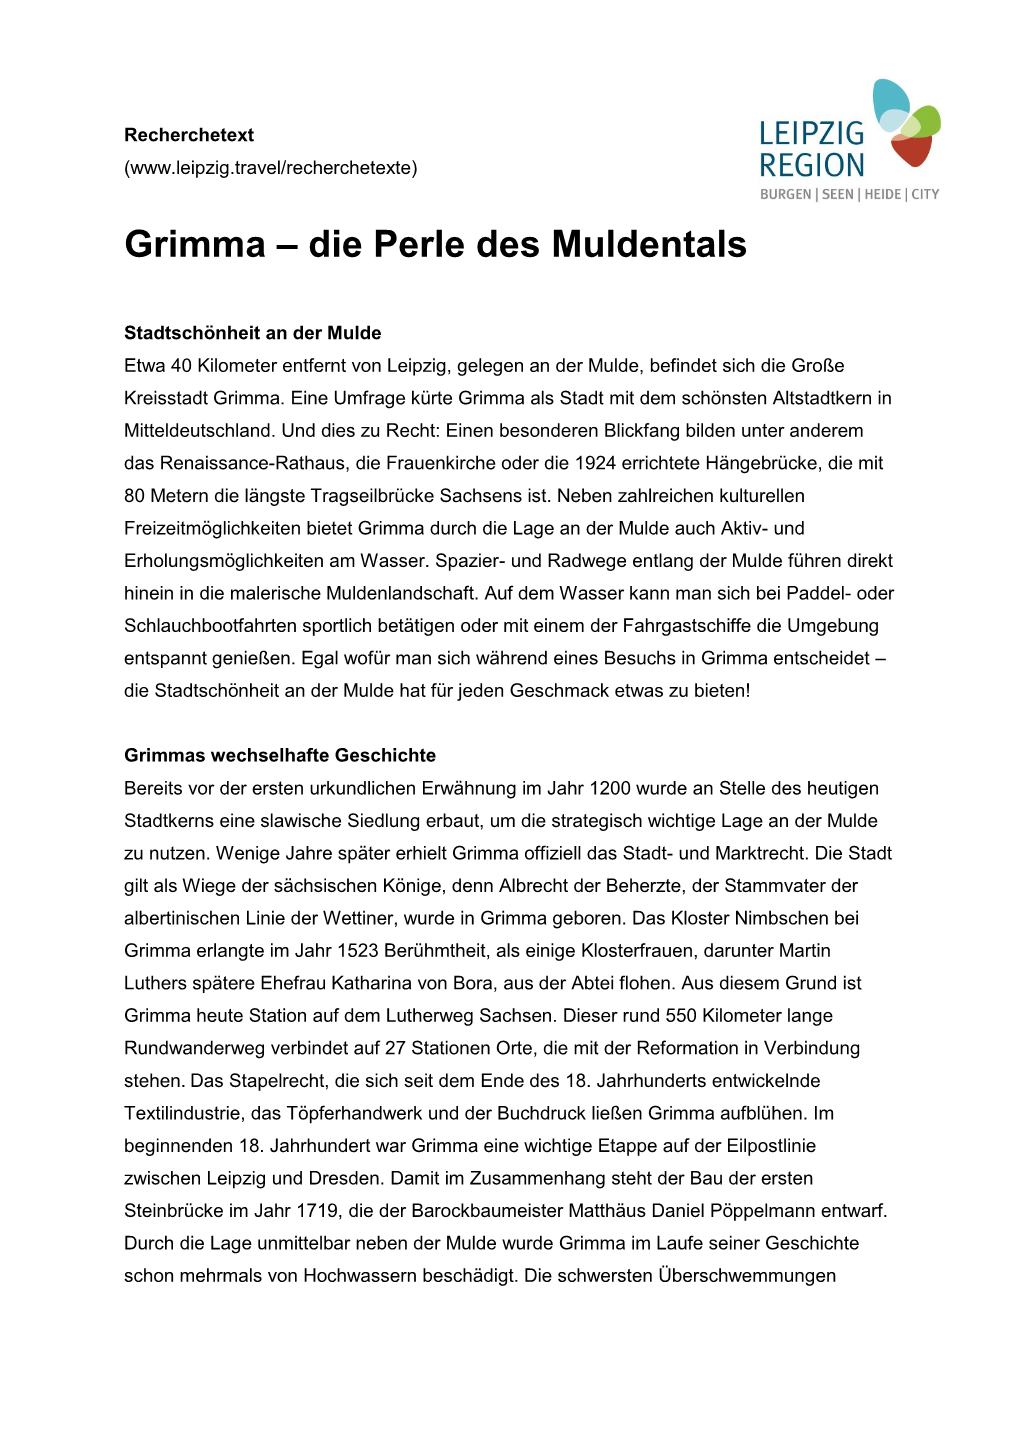 Grimma – Die Perle Des Muldentals